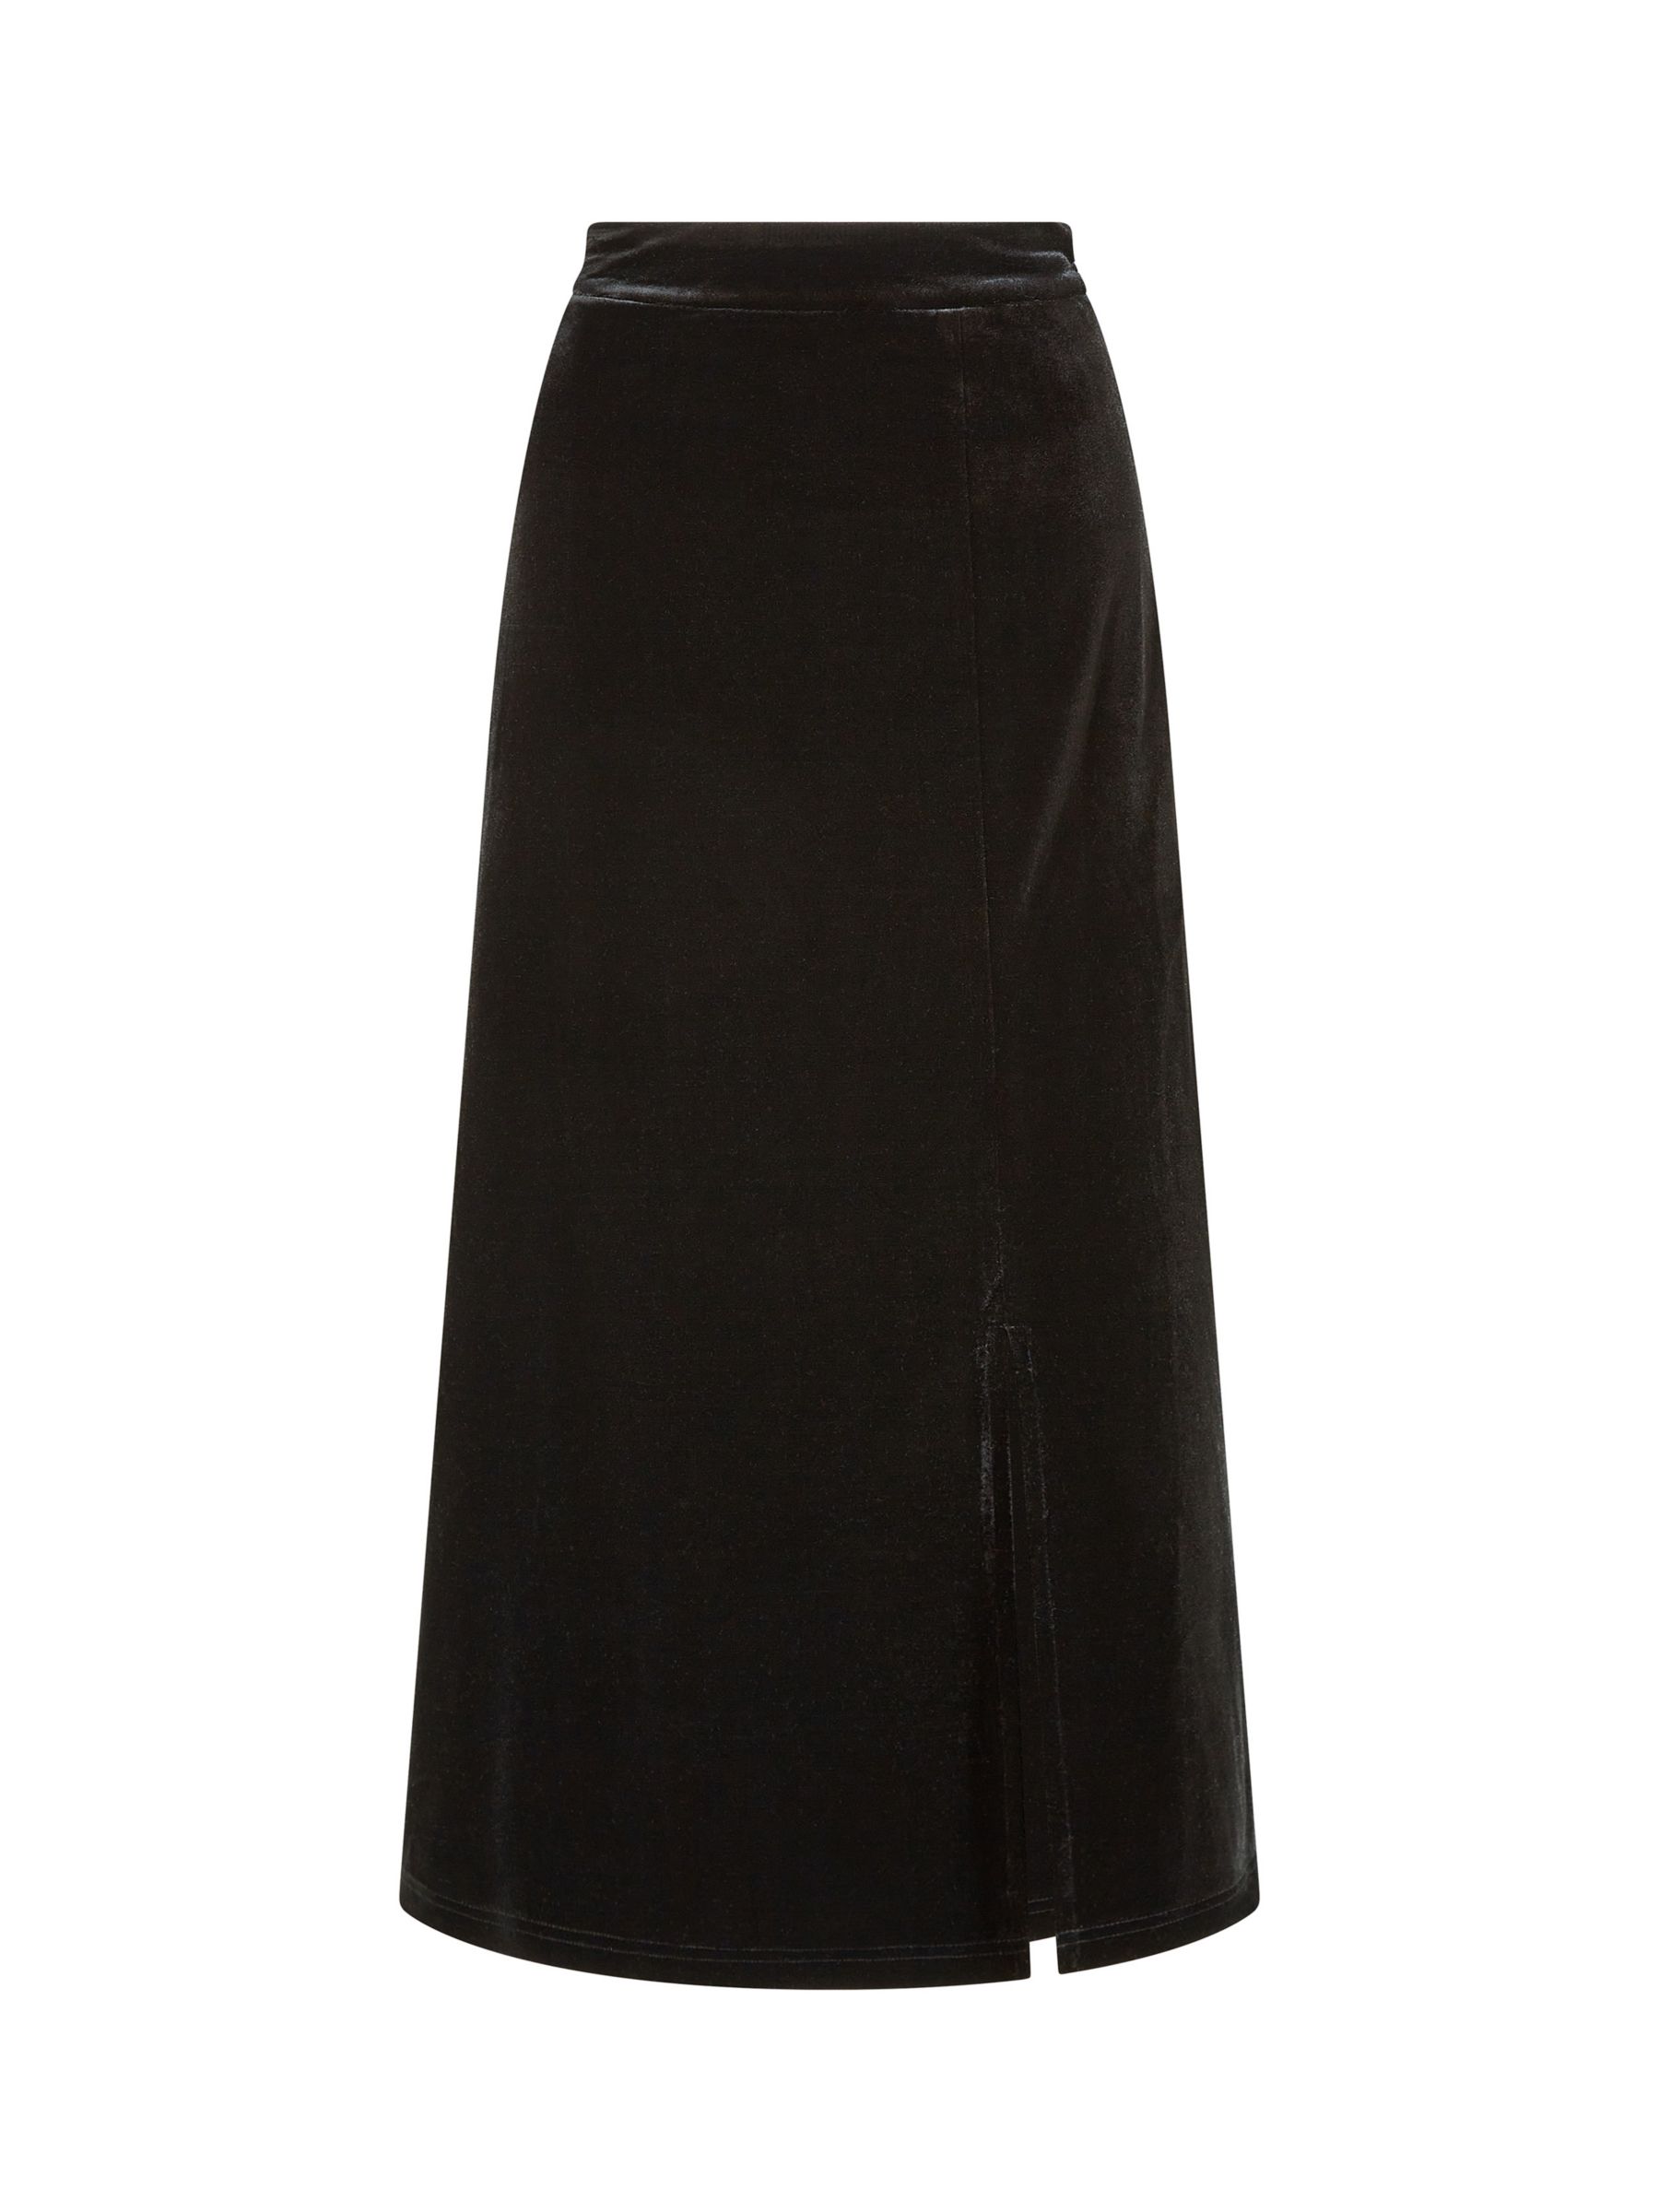 Yumi Velvet Midi Skirt, Black at John Lewis & Partners